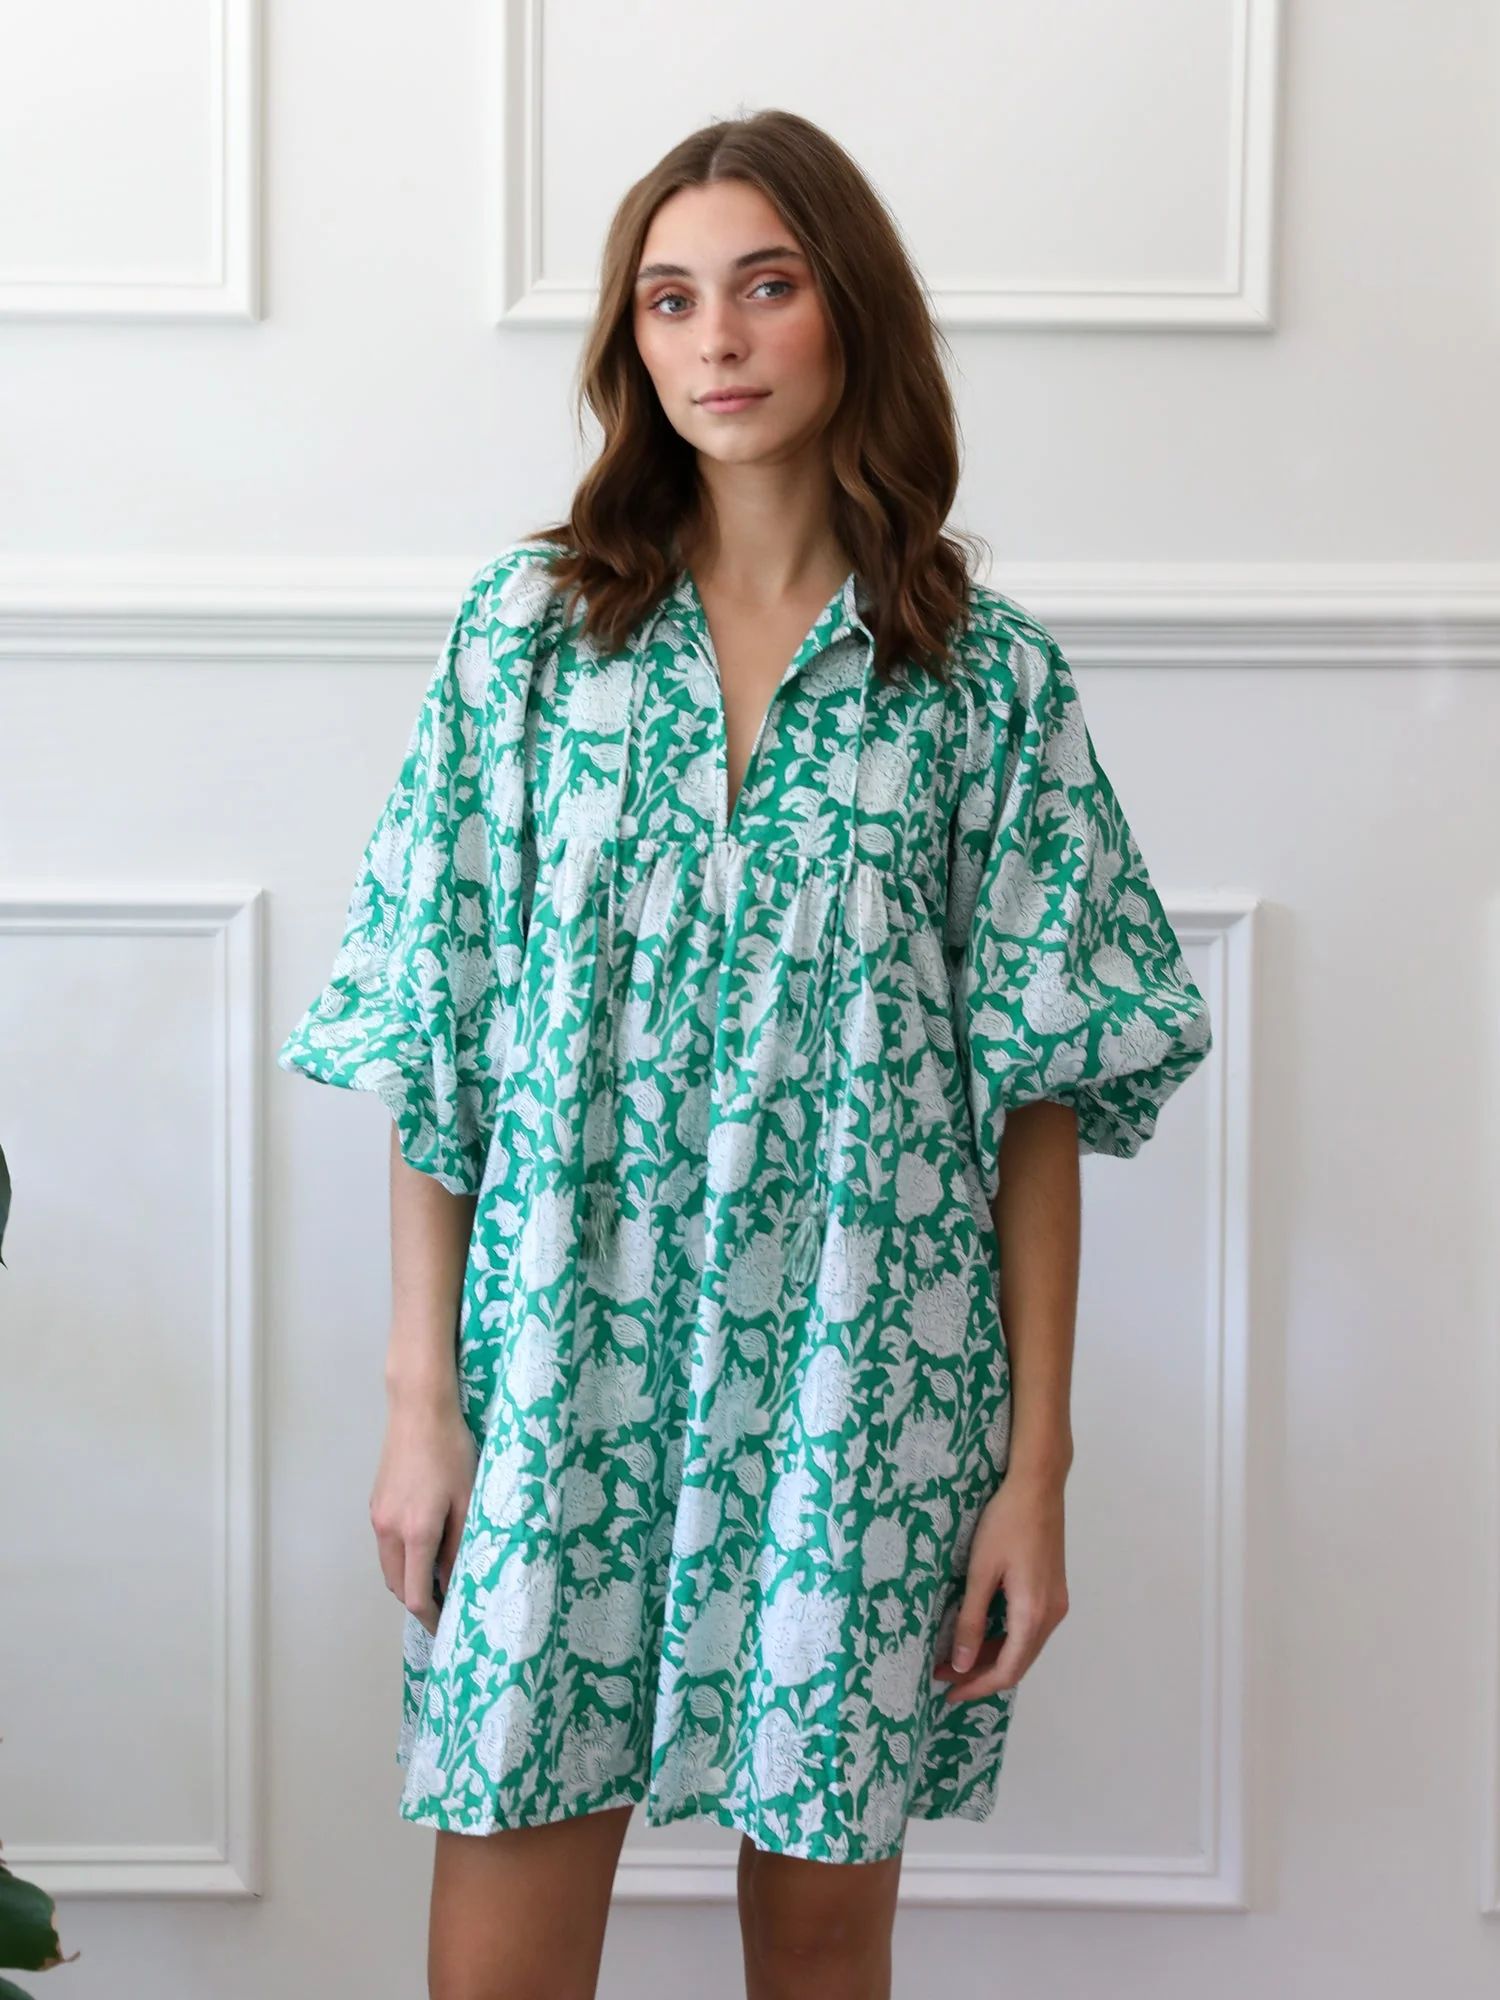 Shop Mille - Daisy Dress in Green Zinnia | Mille